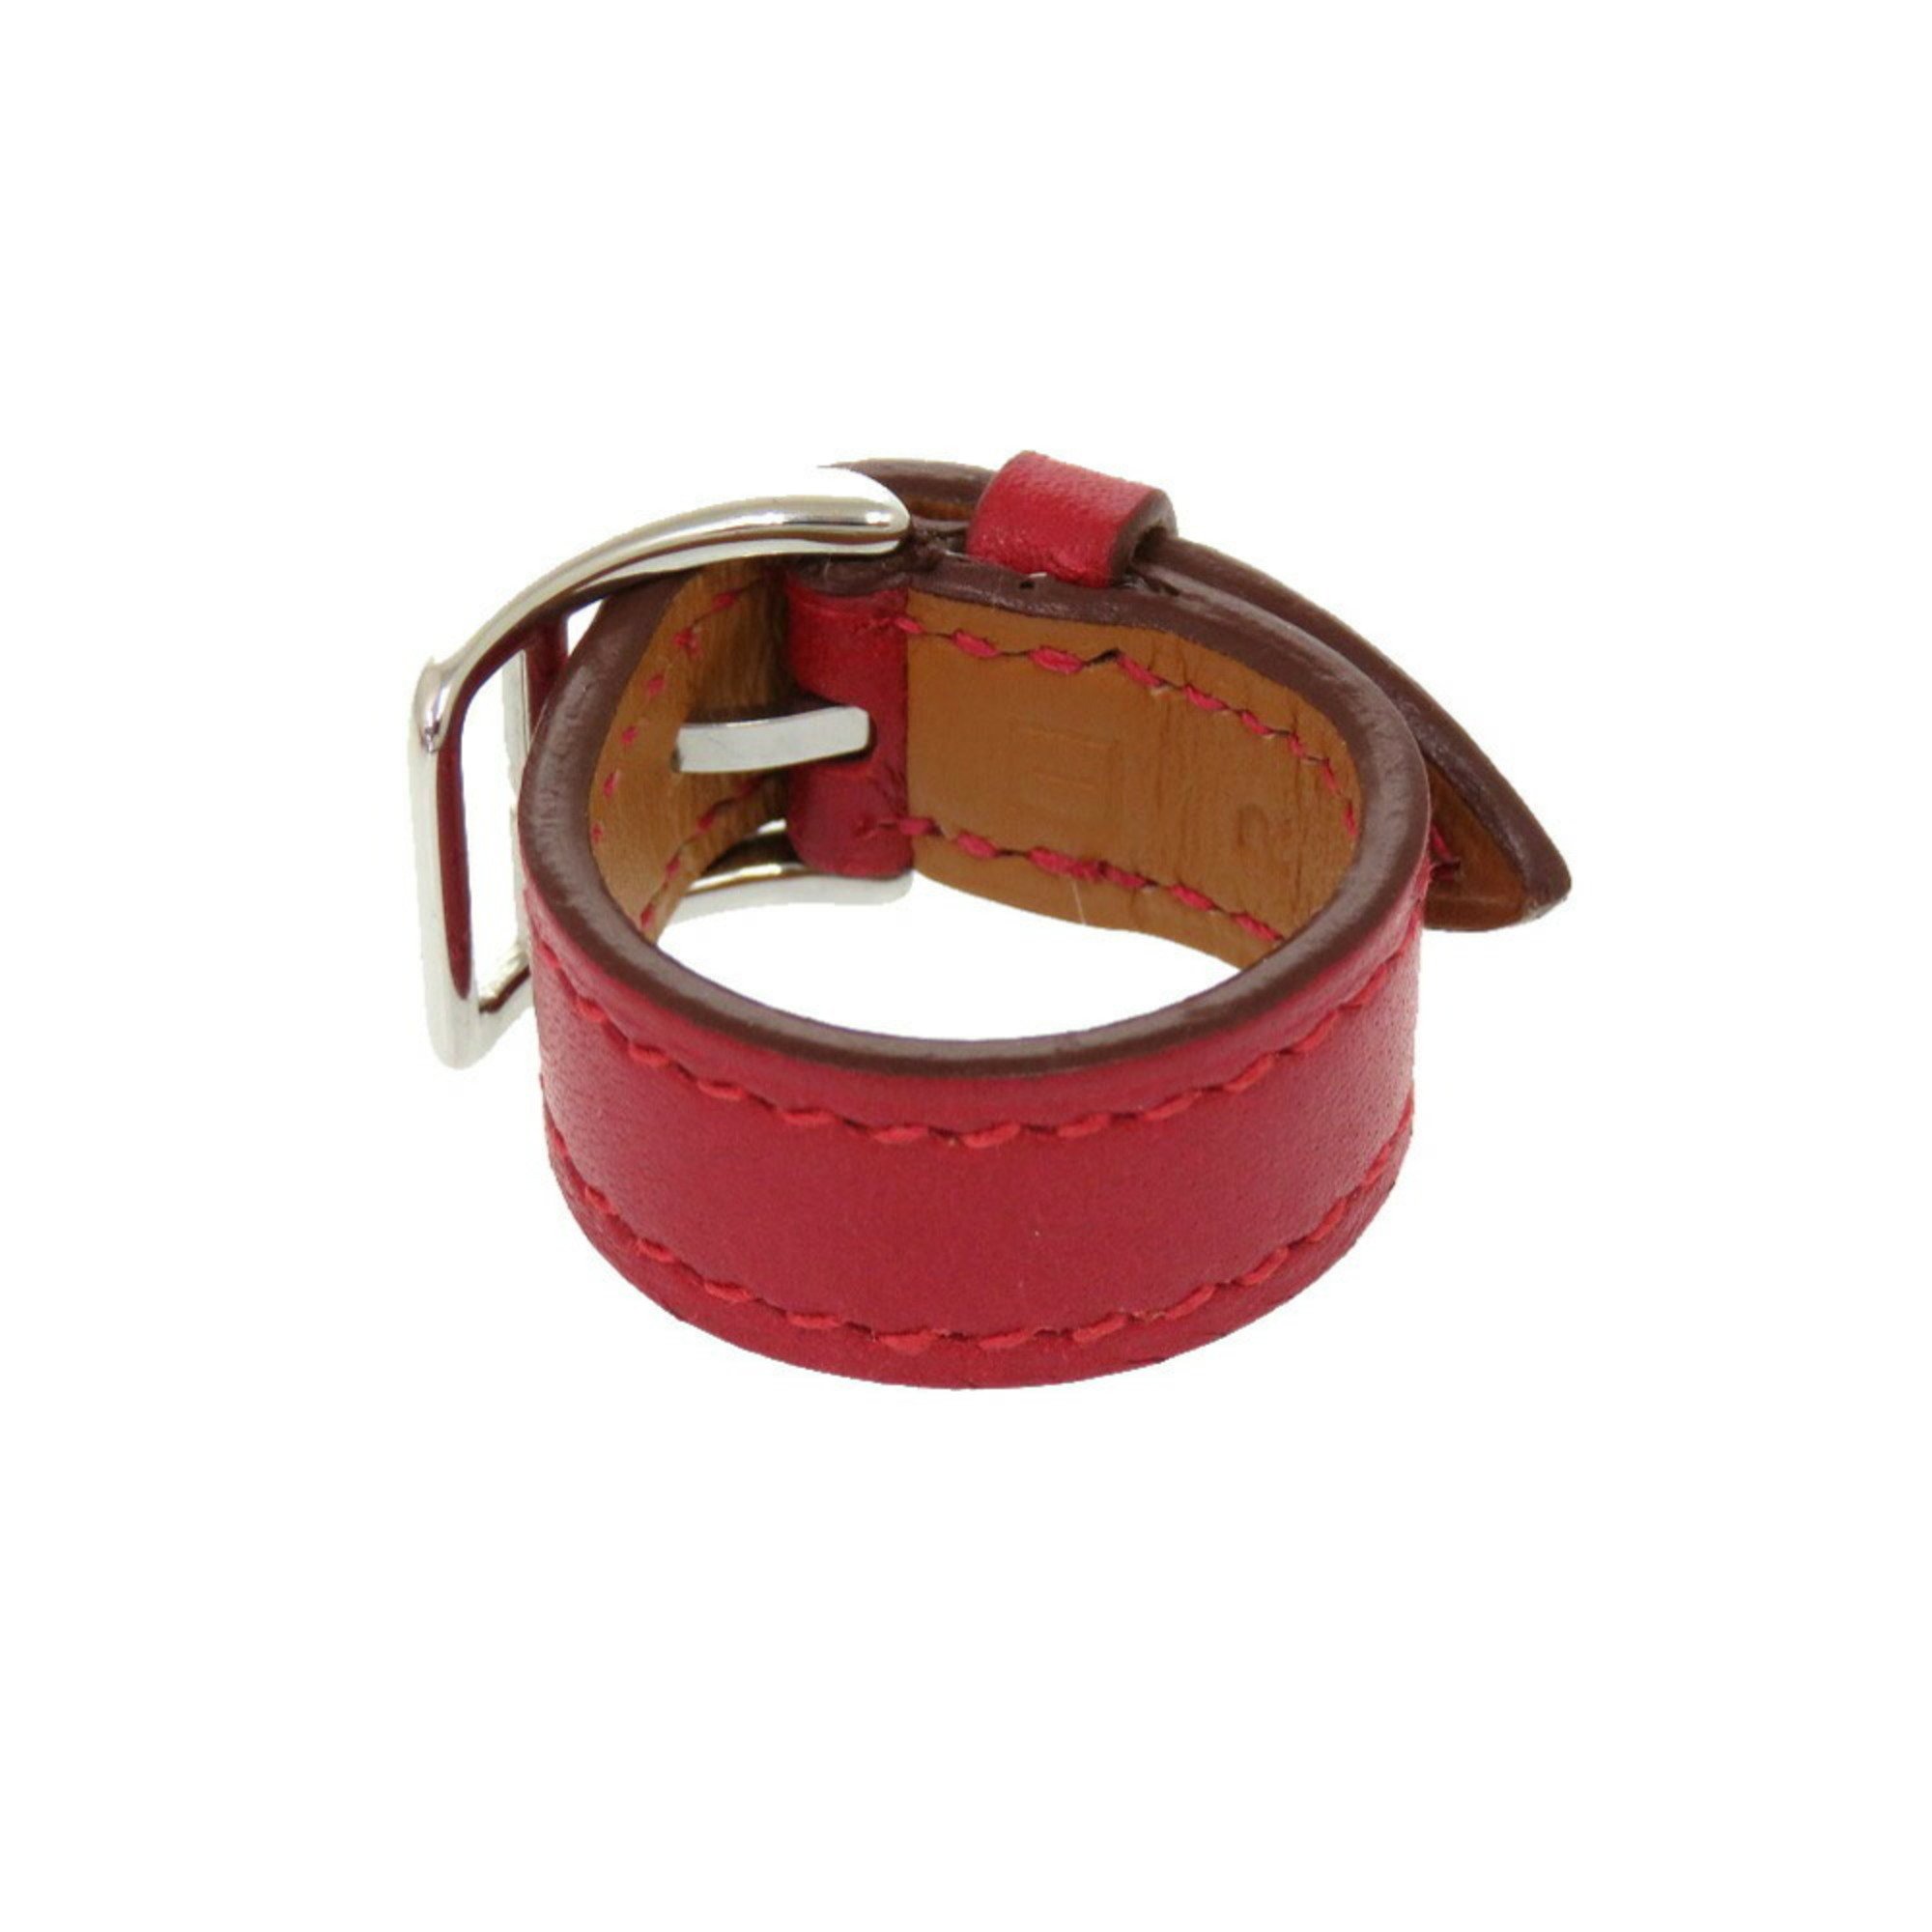 Hermes scarf ring leather red □I stamp belt motif 0994 HERMES